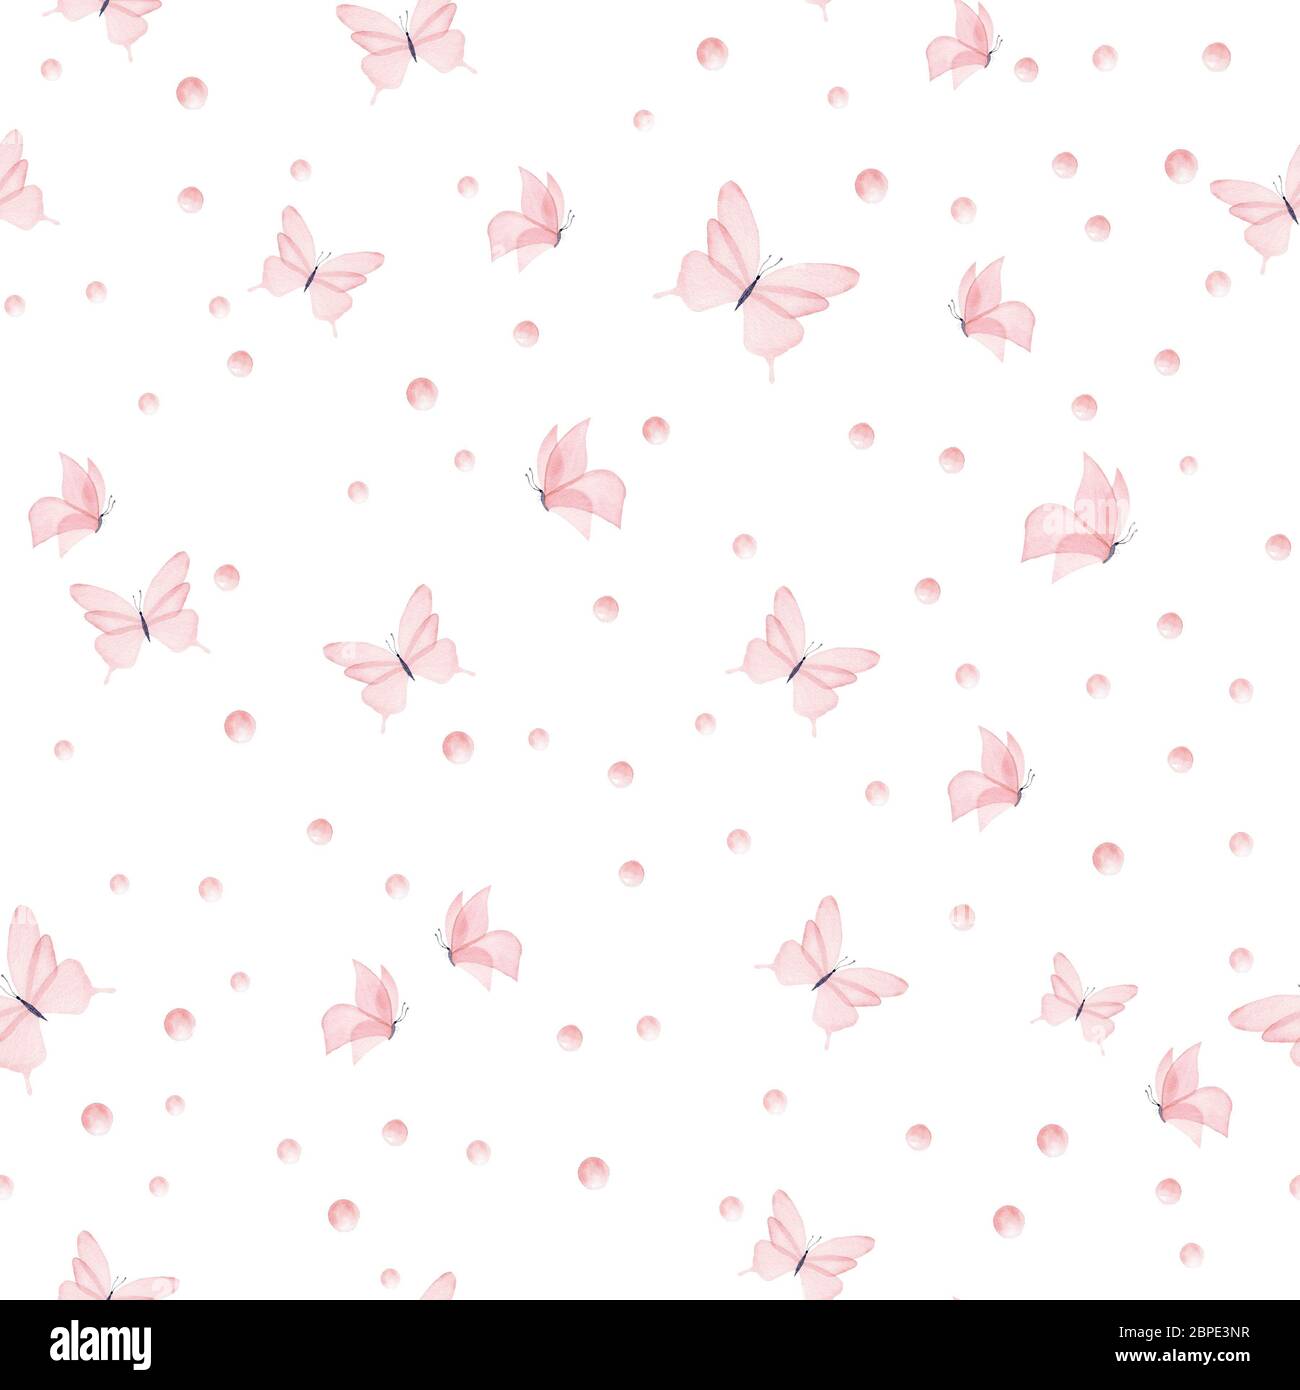 Họa tiết bướm hồng nước sơn trên nền trắng là một trong những thiết kế độc đáo và đẹp mắt nhất hiện nay. Với sự kết hợp giữa màu hồng tươi và trắng tinh khôi, họa tiết này sẽ tạo nên một không gian trang nhã và đầy phong cách. Được thiết kế seamless, họa tiết này sẽ giúp cho việc trang trí nhà cửa của bạn dễ dàng hơn bao giờ hết. Hãy cùng trải nghiệm và tận hưởng sự tinh tế của họa tiết bướm hồng nước sơn trên nền trắng này!